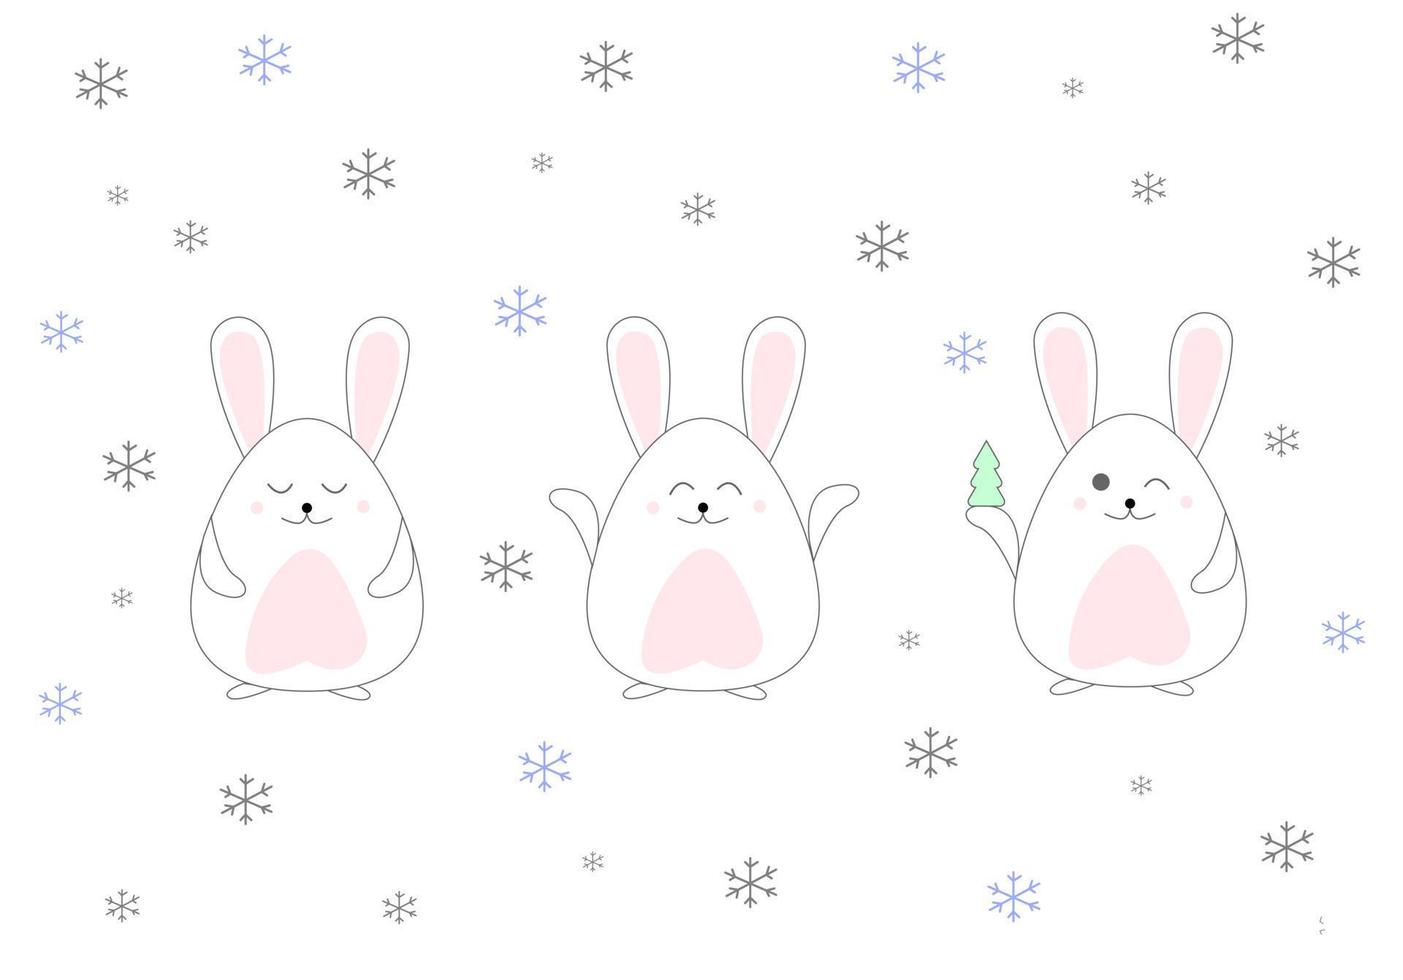 divertente e carino coniglietto nel neve per Natale e inverno. contento nuovo anno 2023.vettore illustrazione vettore